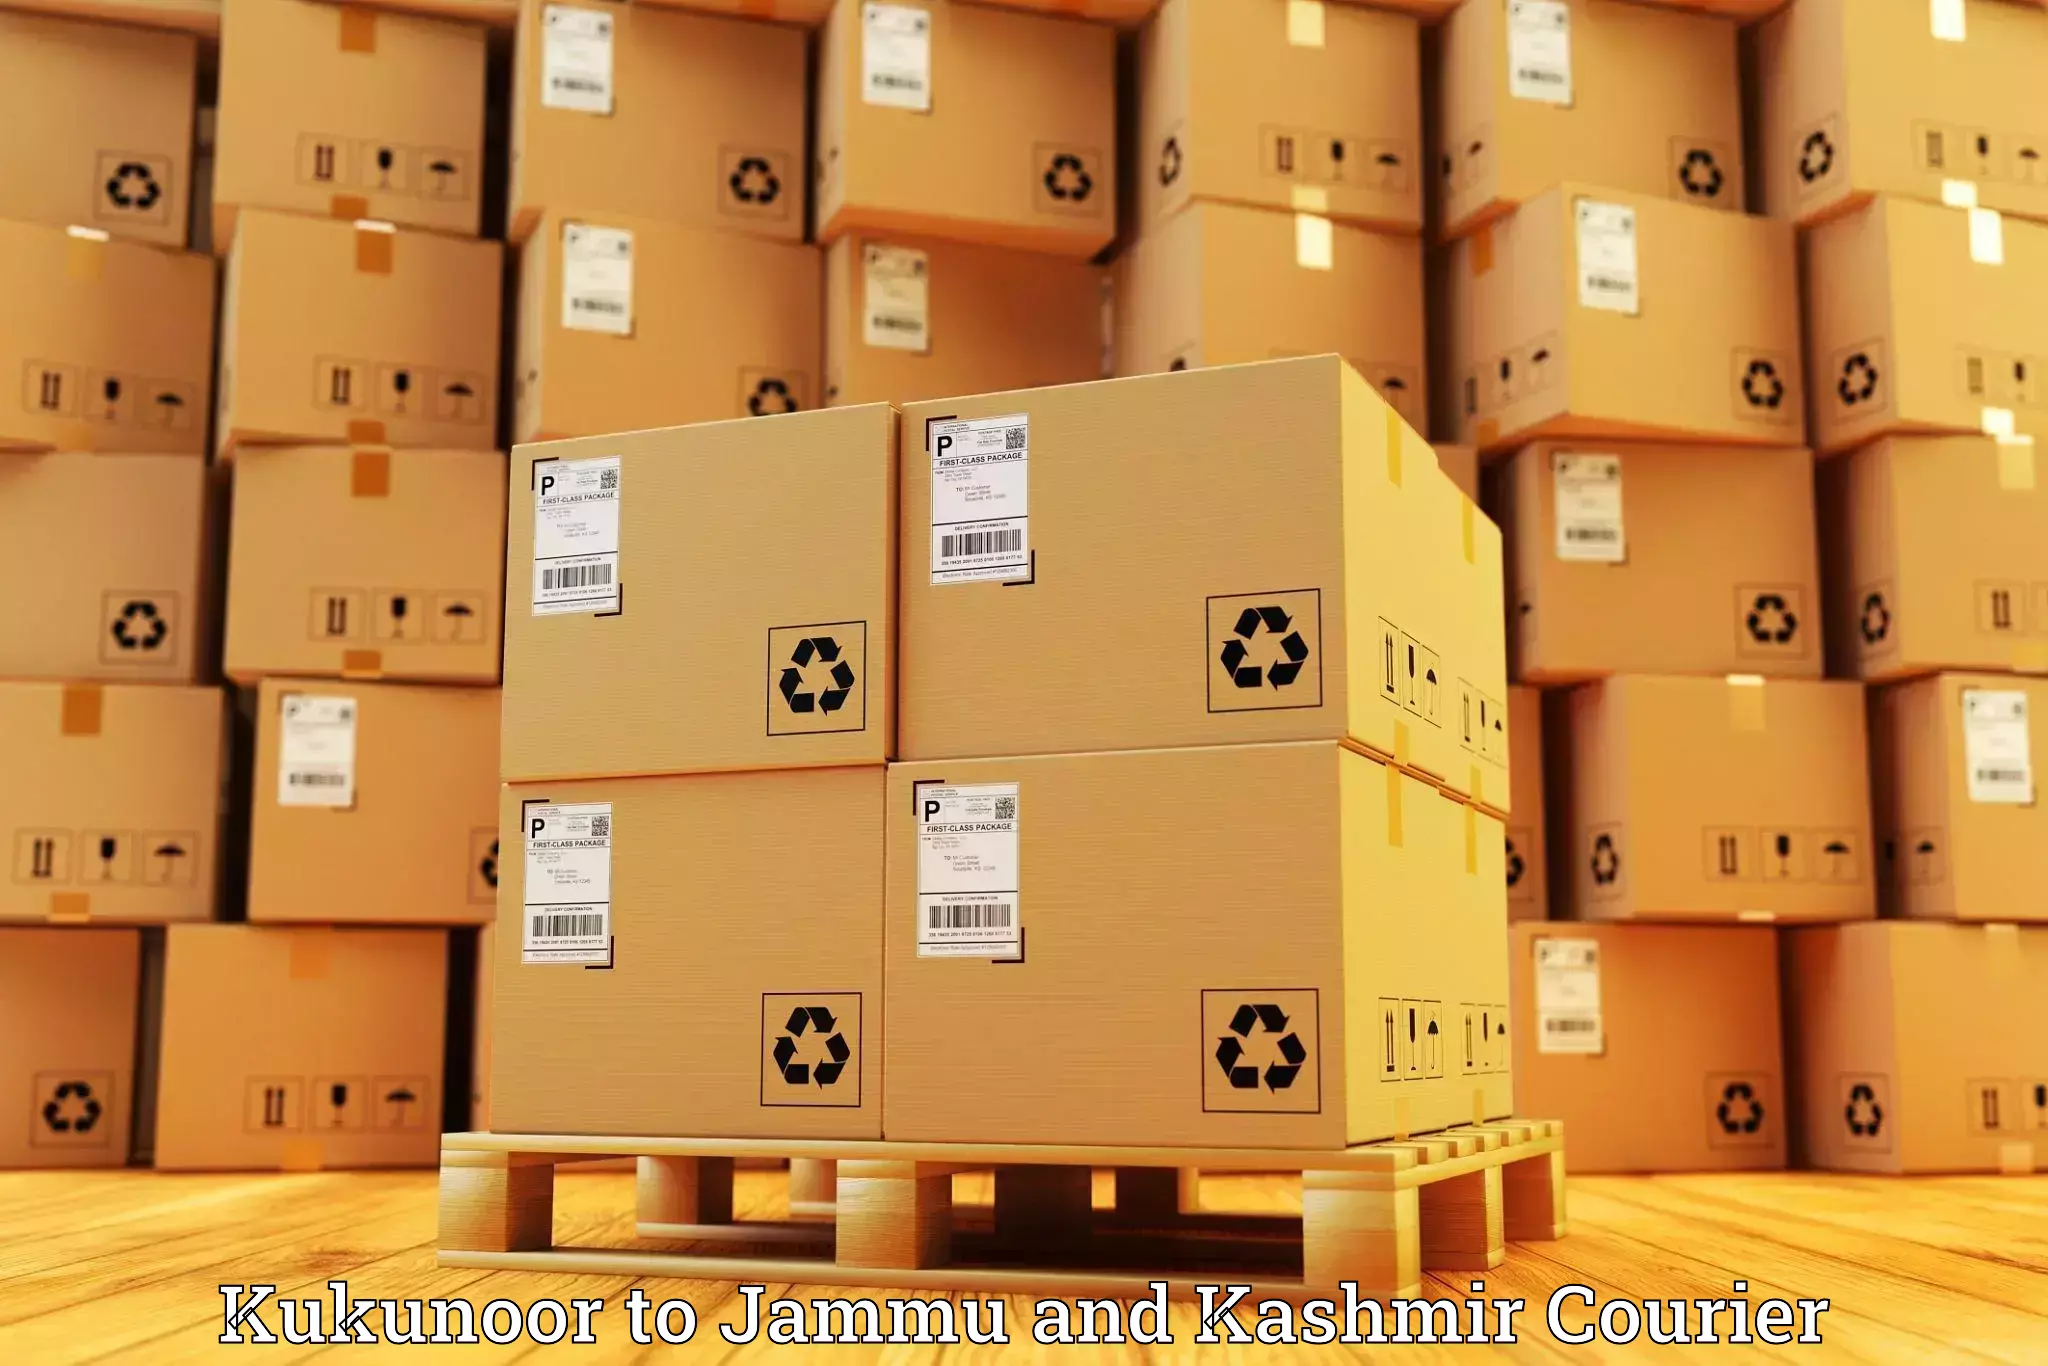 Enhanced tracking features Kukunoor to IIT Jammu